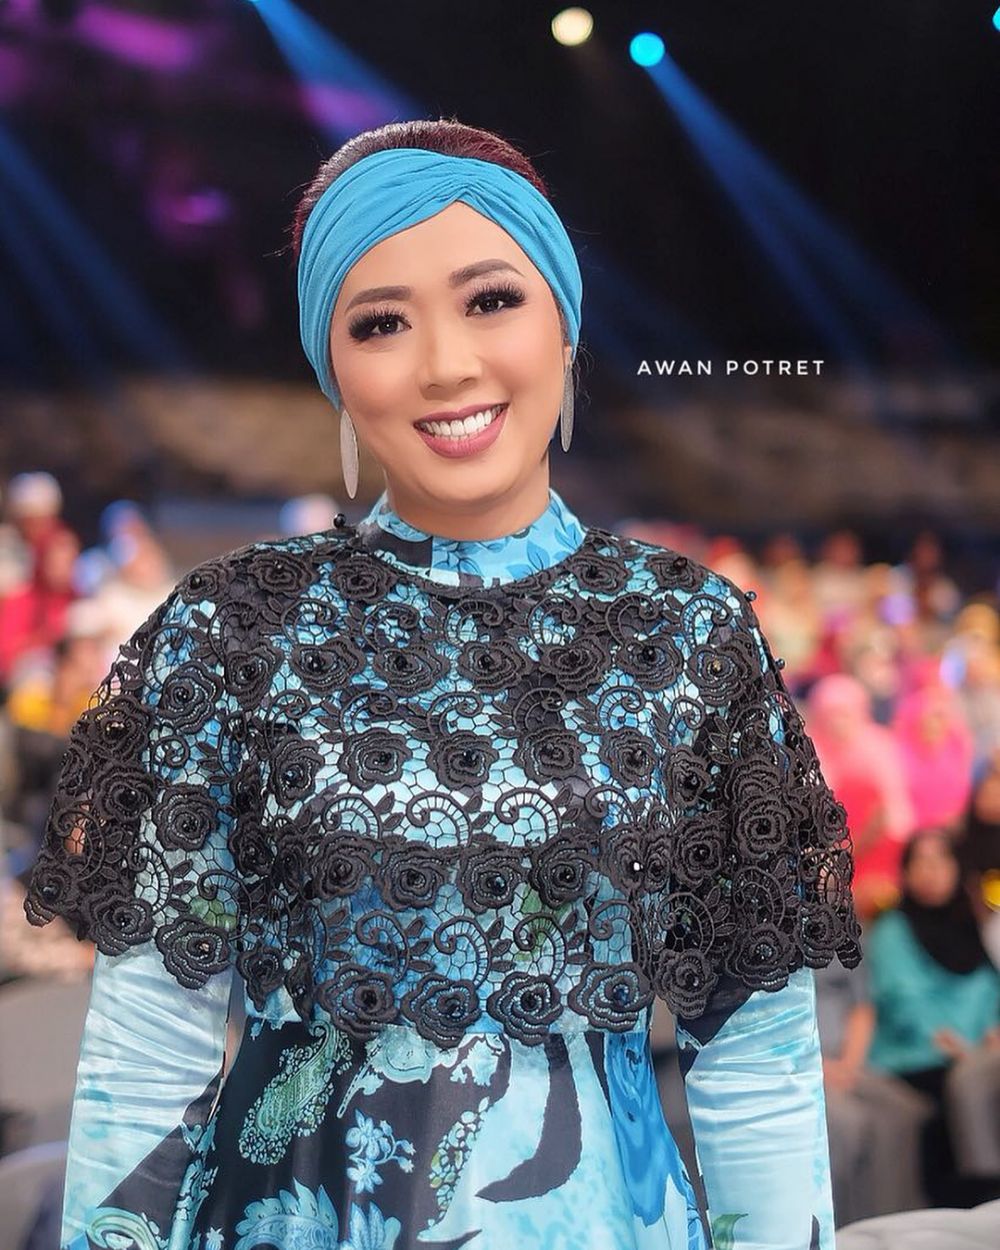 8 Potret keluarga Festival Ramadan Indosiar, kompak bergaya islami